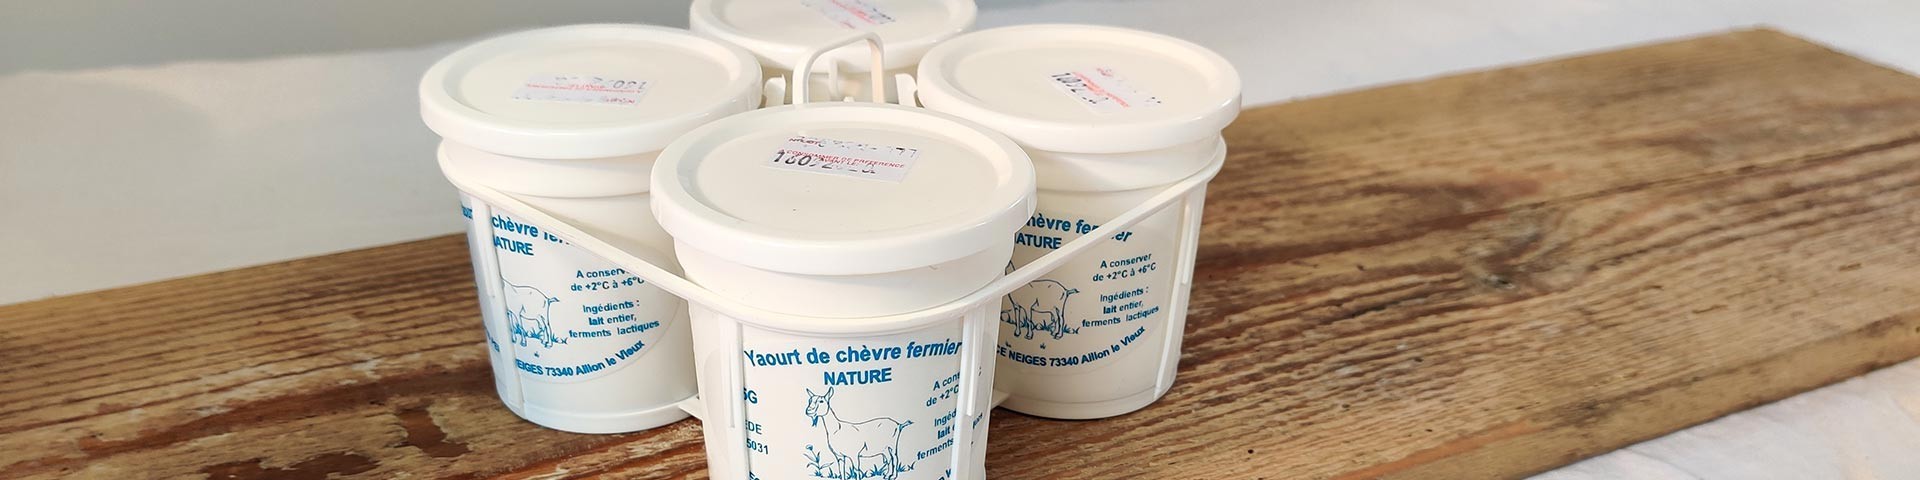 Les produits laitiers de Savoie au lait de chèvre